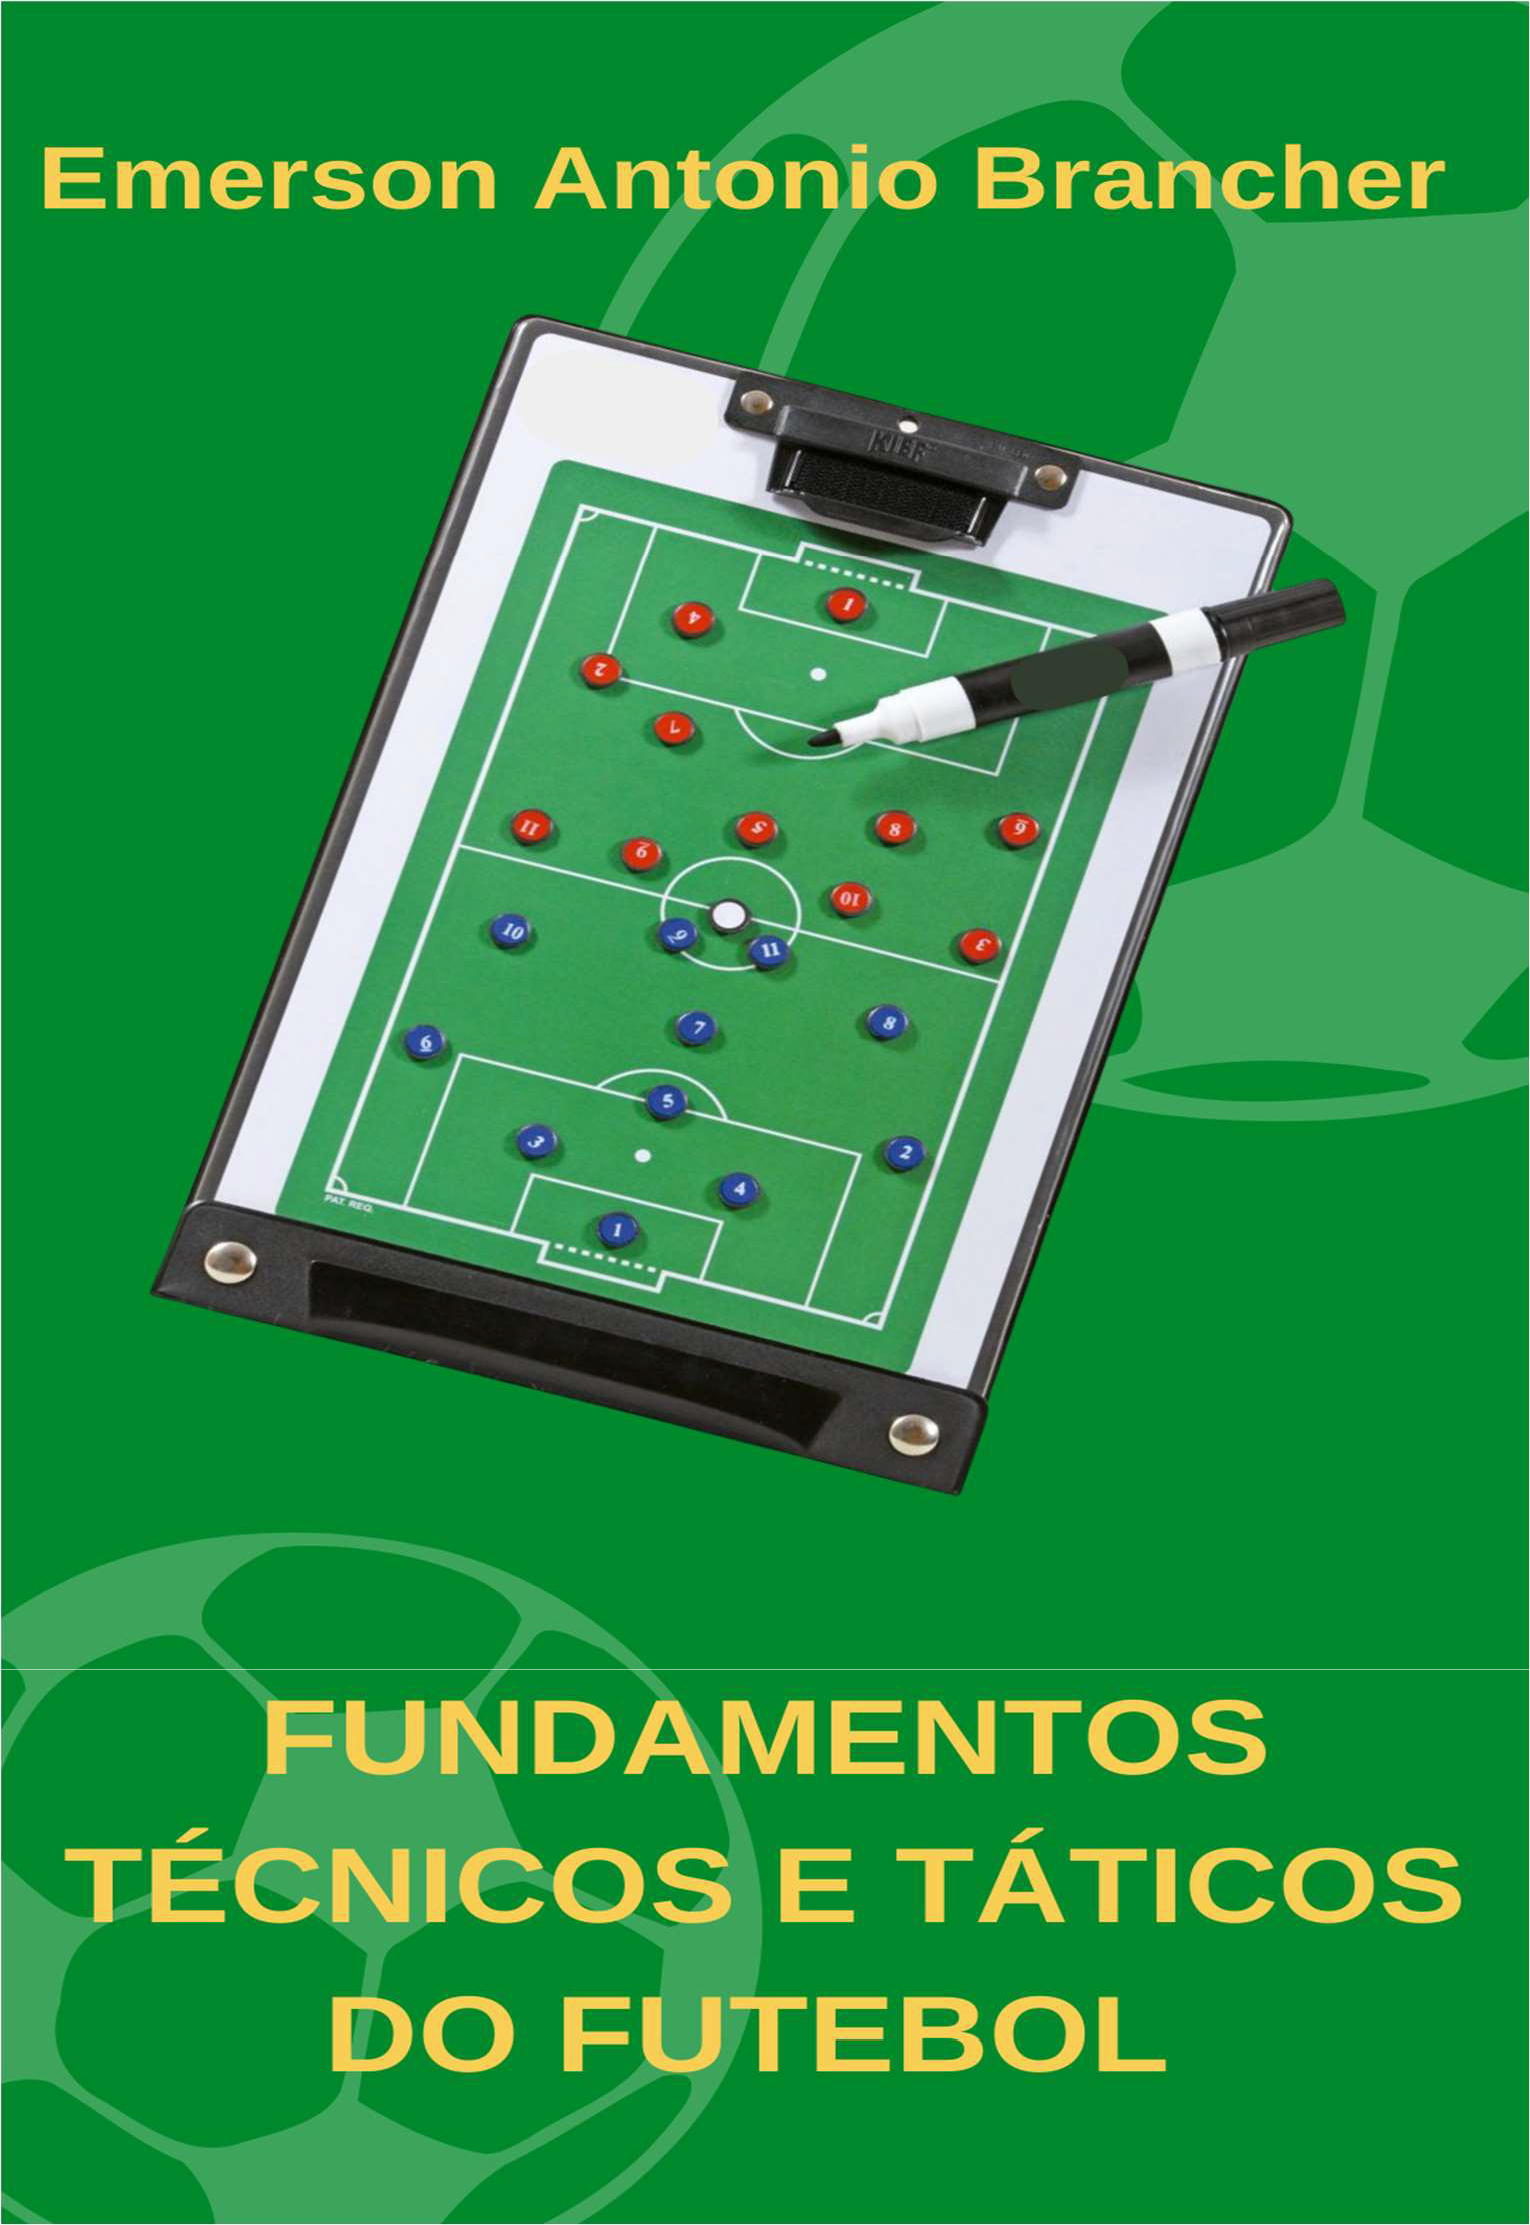 Futebol & Prancheta – Página 2 – Por um futebol estruturado e com bases  científicas